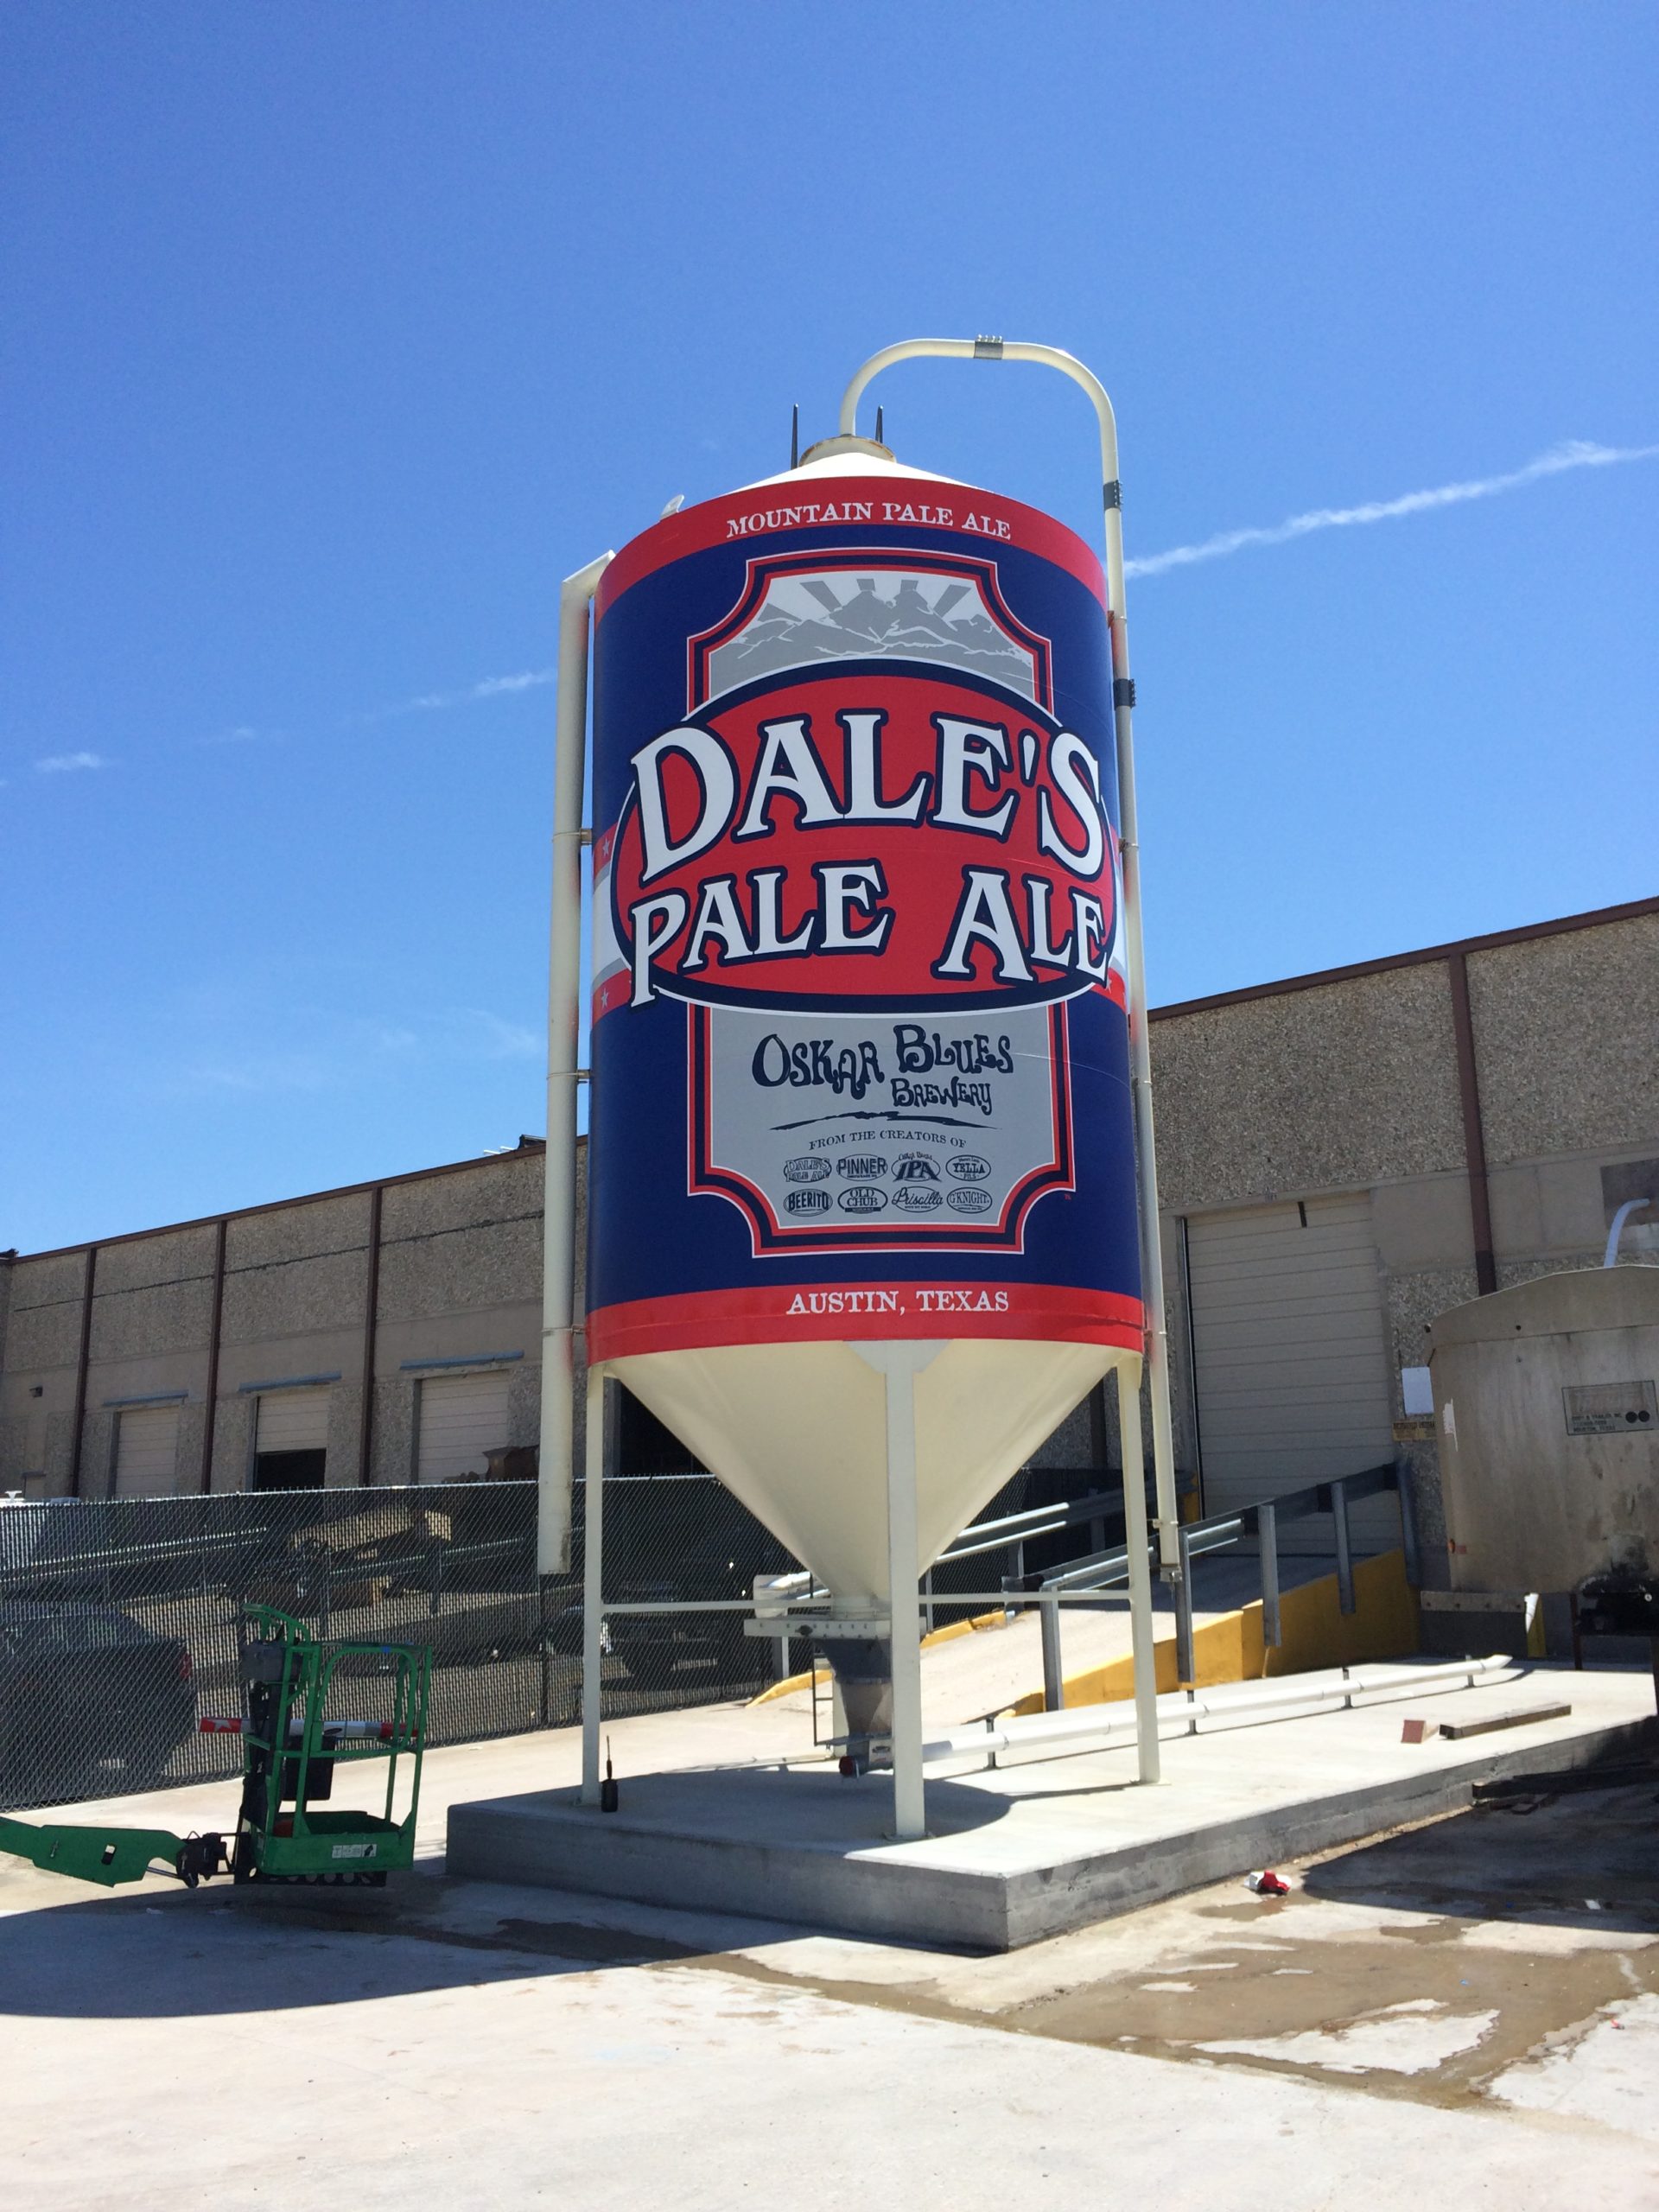 Dale's Pale Ale graphics